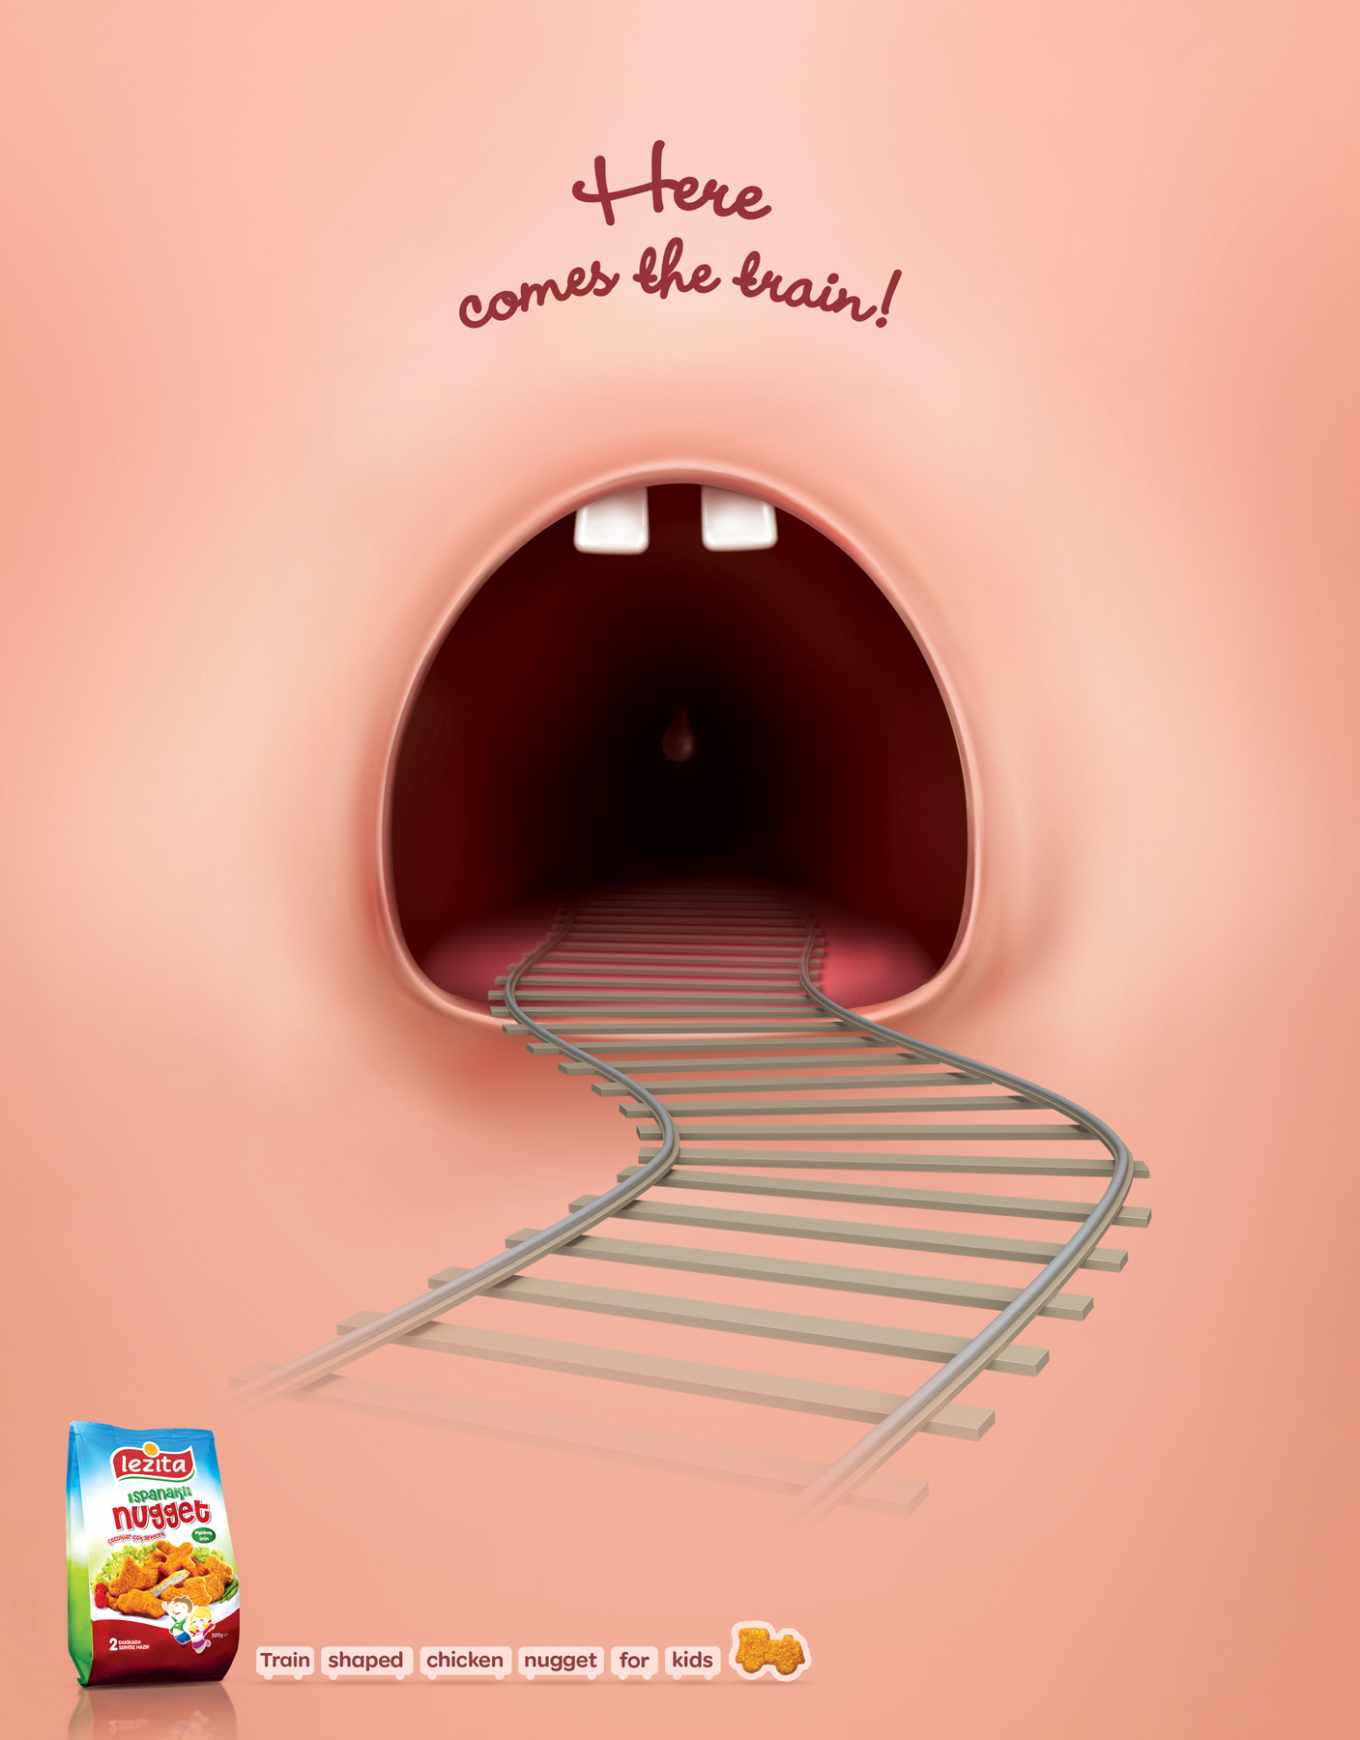 lezita儿童鸡块食品广告:通往嘴巴的"隧道铁路"